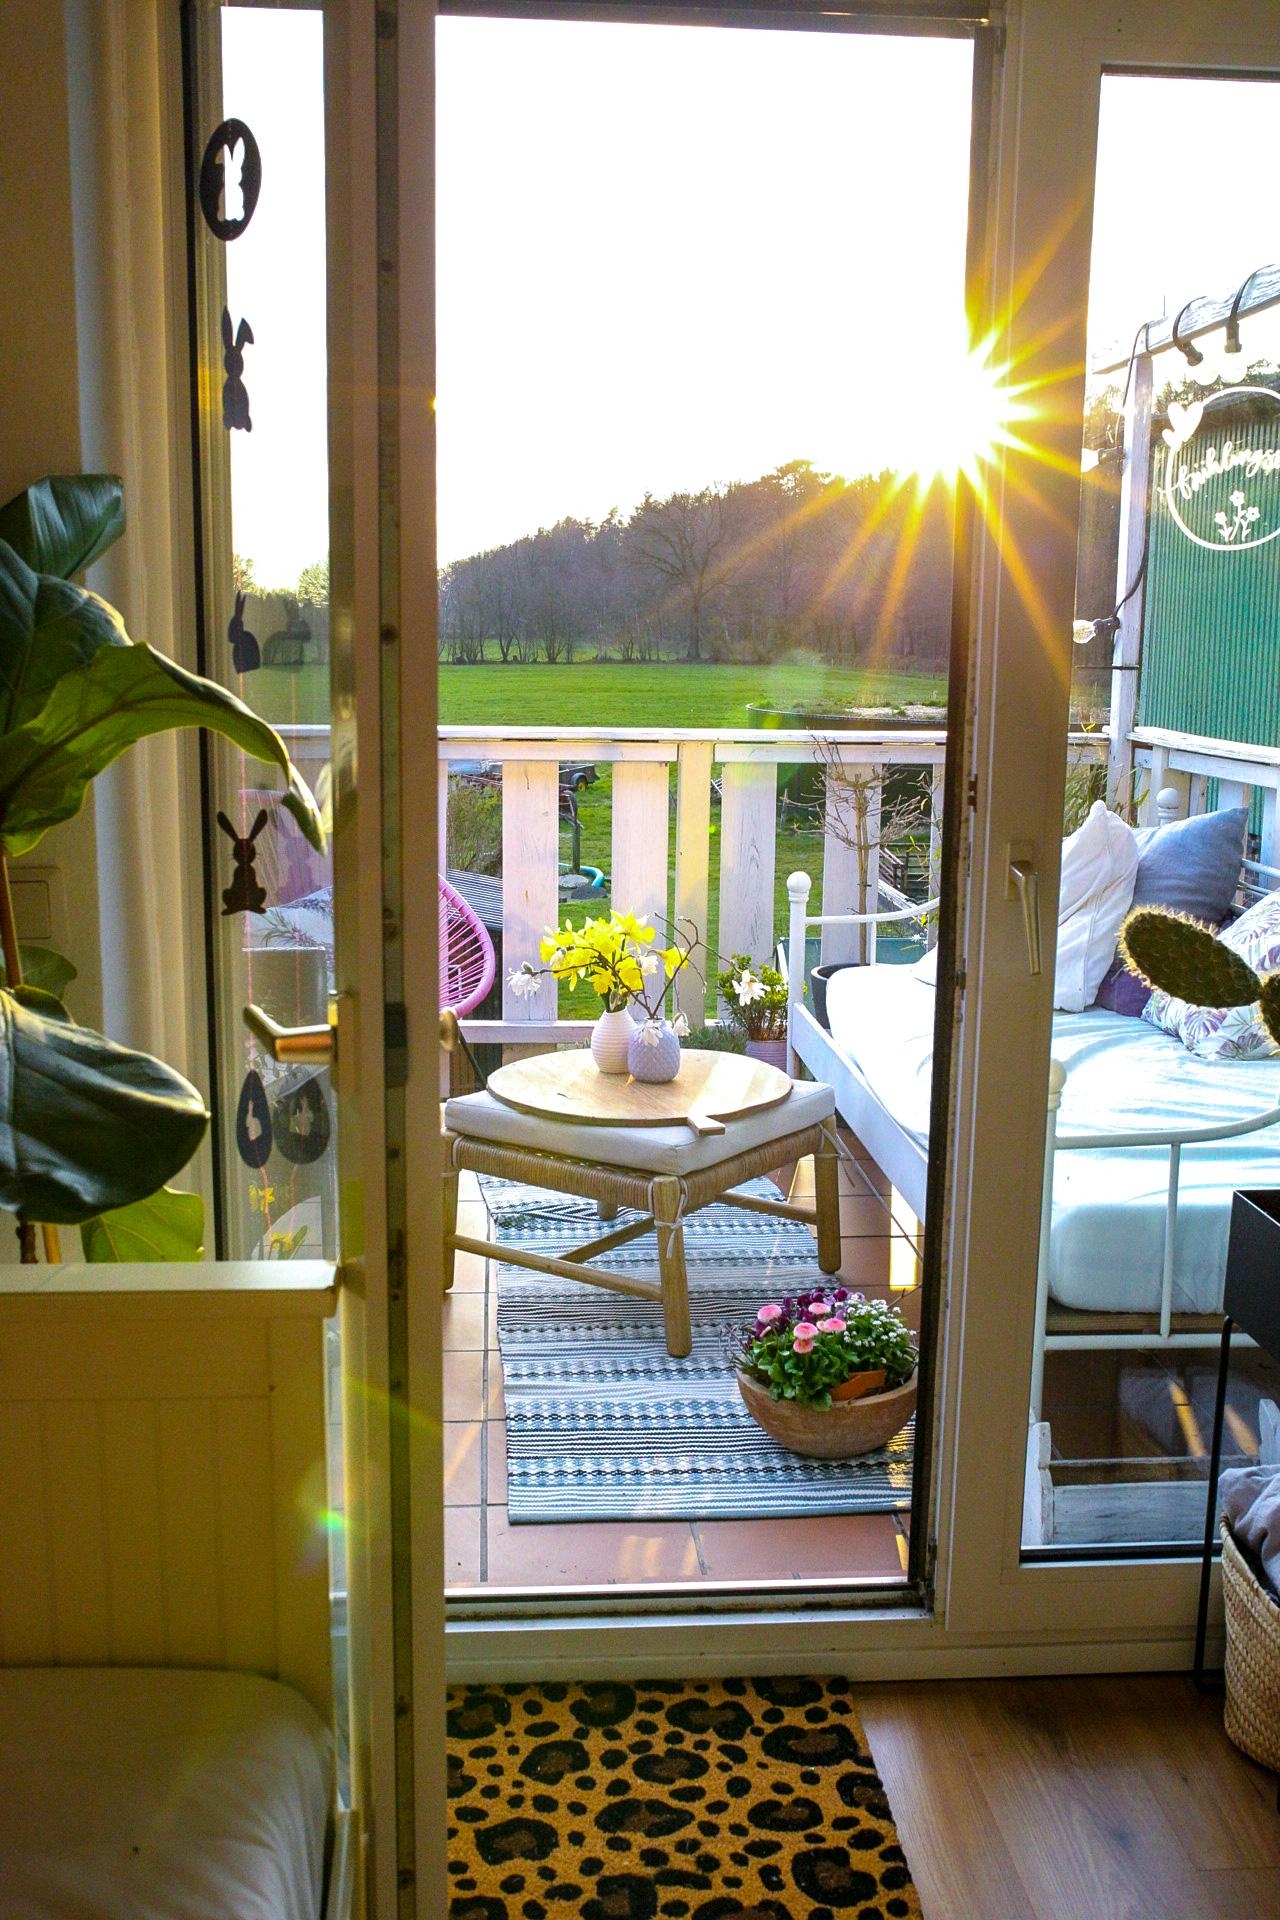 Abendstimmung im Frühling auf dem Balkon!Für viel Gemütlichkeit sorgt das  Balkonbett mit vielen Kissen #balkondiy 